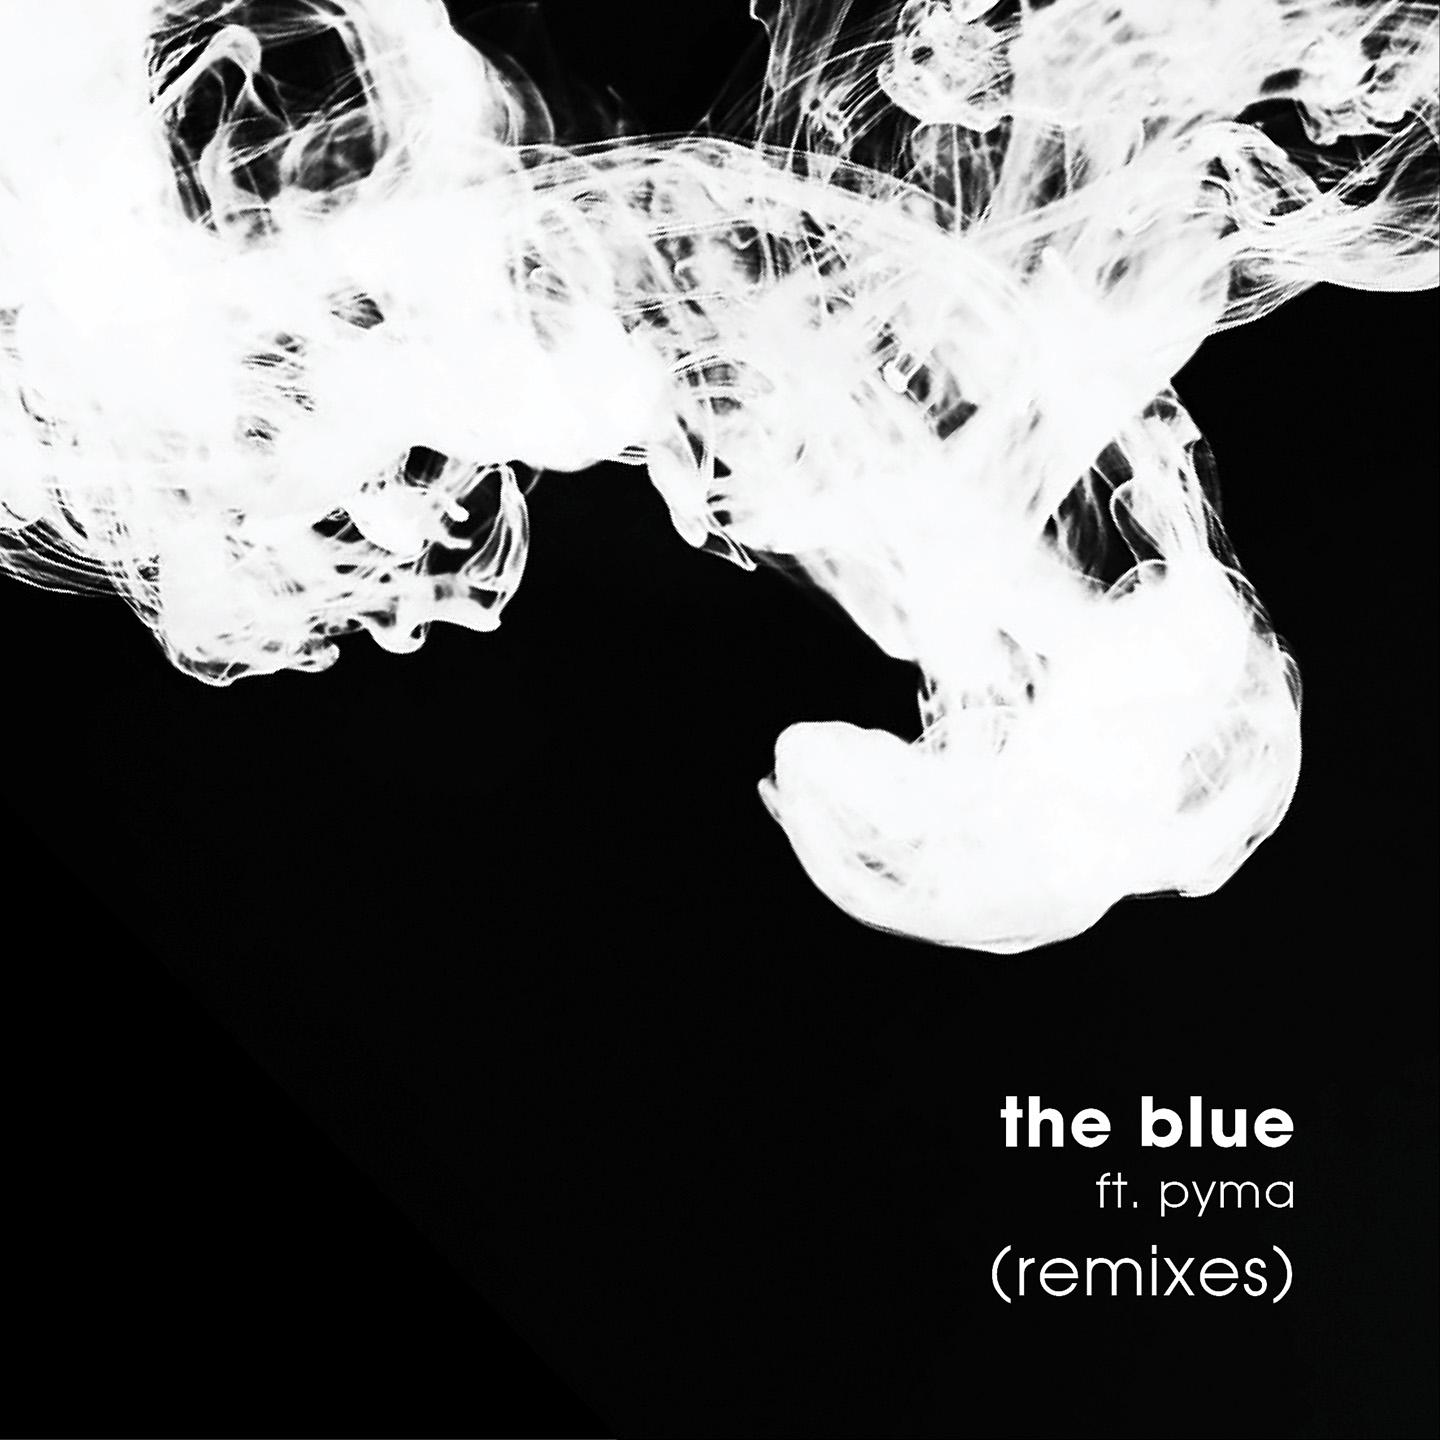 The Blue (EdiP Remix)